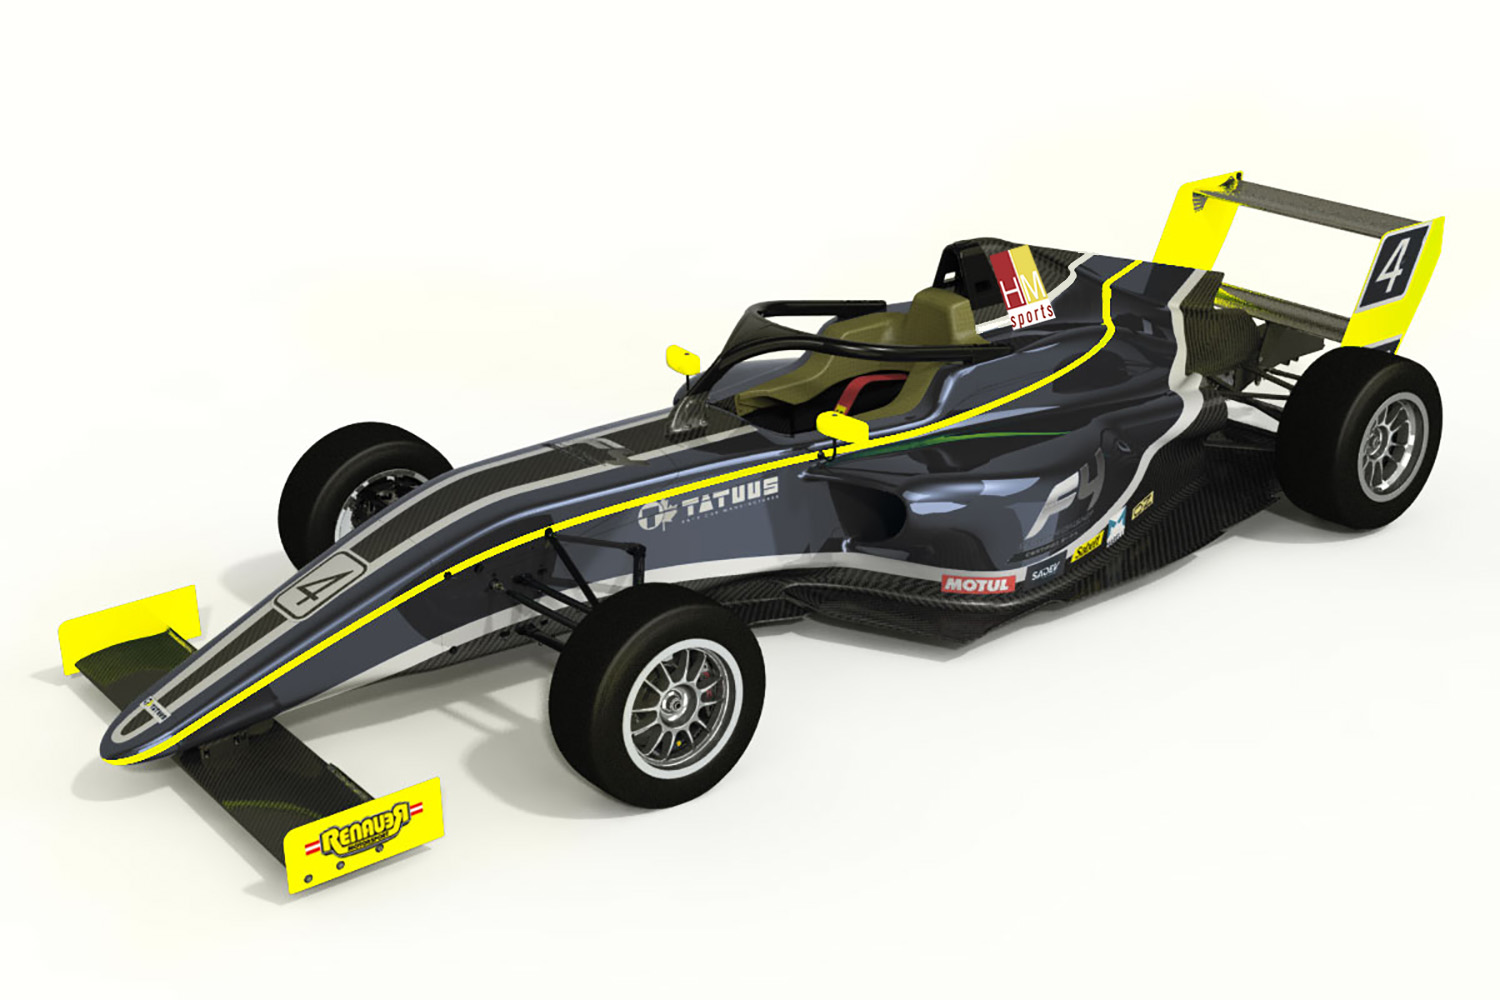 V Eset Cupu se ukáže Renauer Motorsport, bude mít novou formuli 4